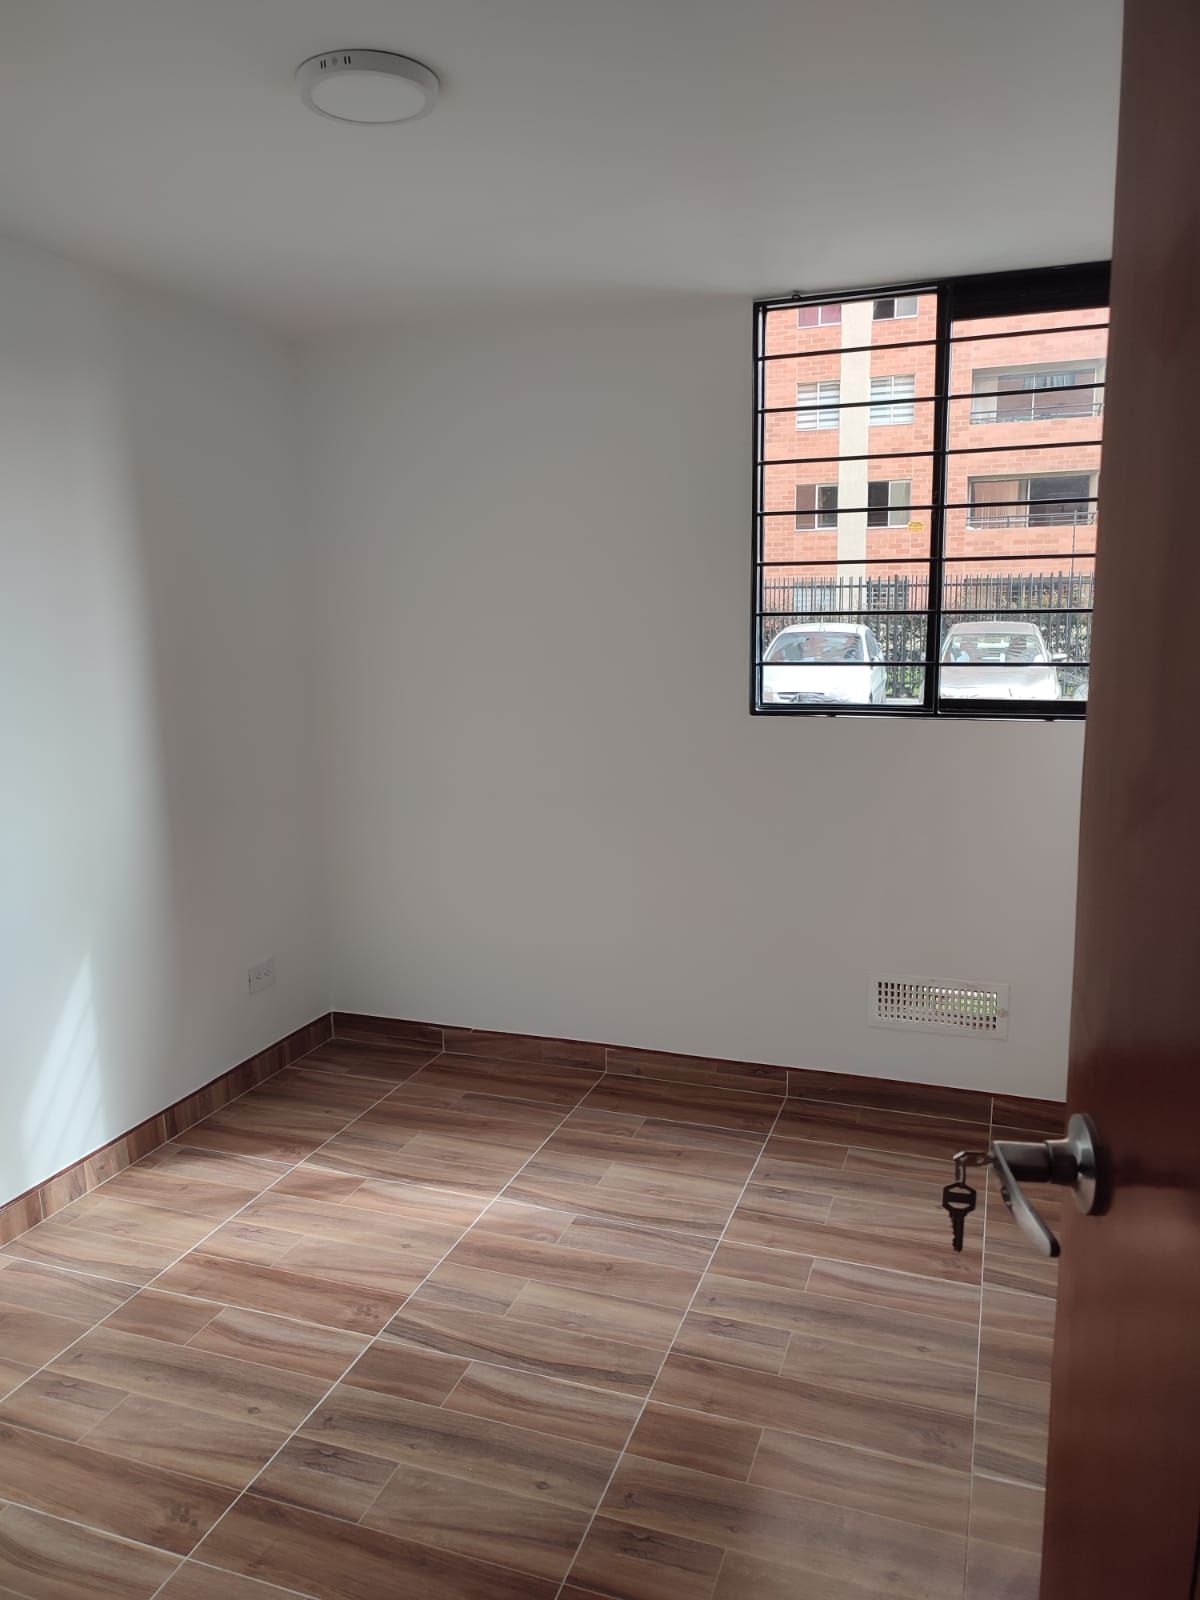 Apartamento en arriendo Madrid 64 m² - $ 850.000